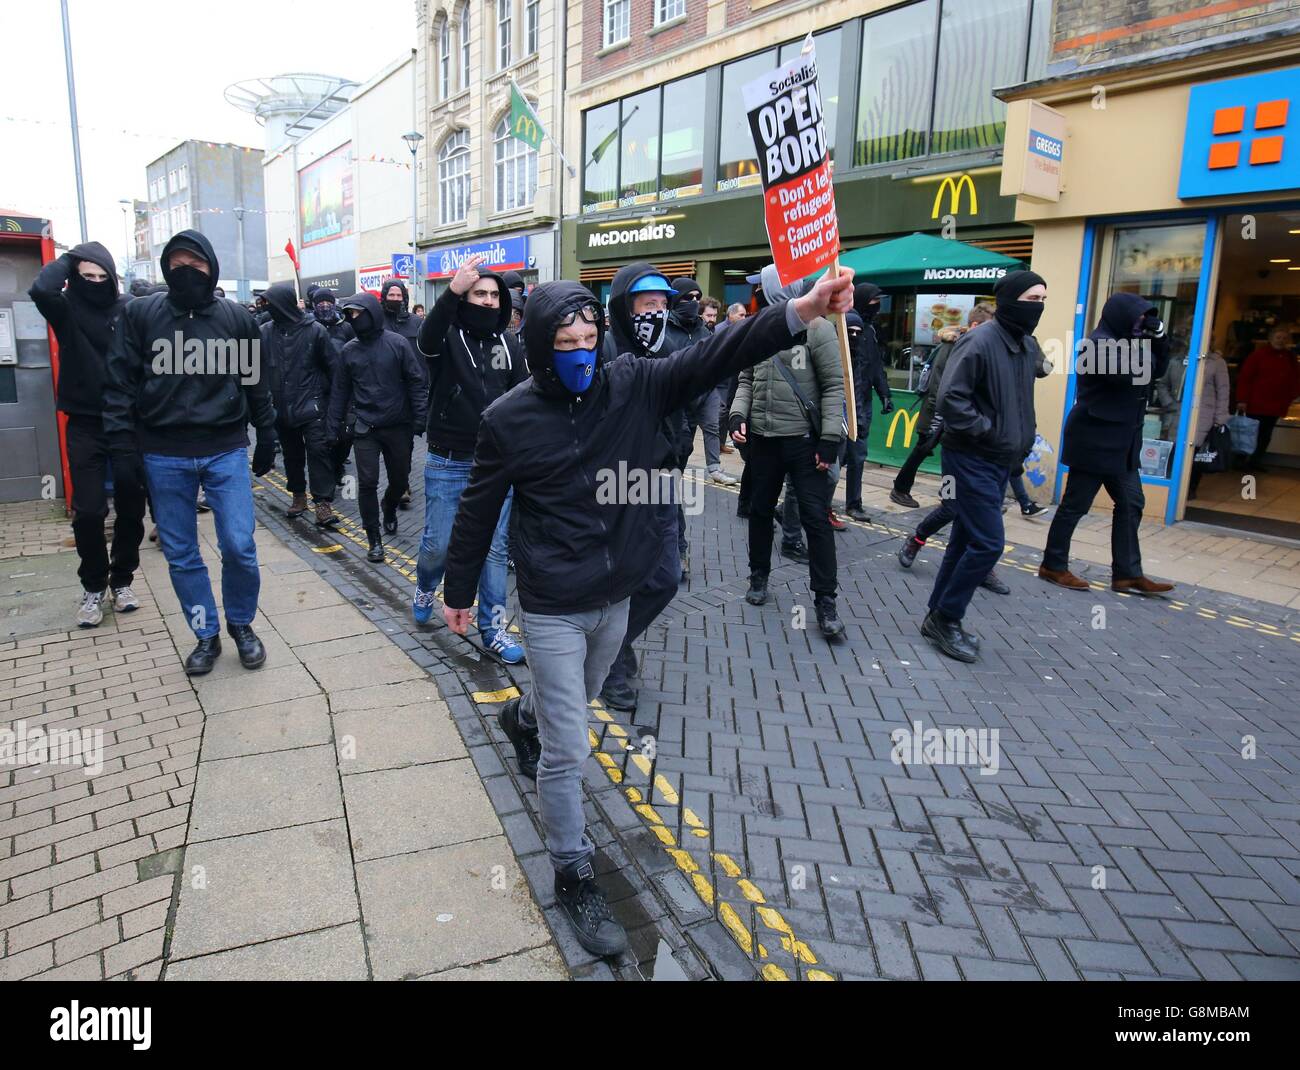 Antifaschistische Demonstranten durchbrechen Polizeilinien, während sie mit rechten Demonstranten zusammenstoßen, während sich beide Gruppen in Dover, Kent, zu einem Nachmittag der Demonstration über Einwanderung versammeln. Stockfoto